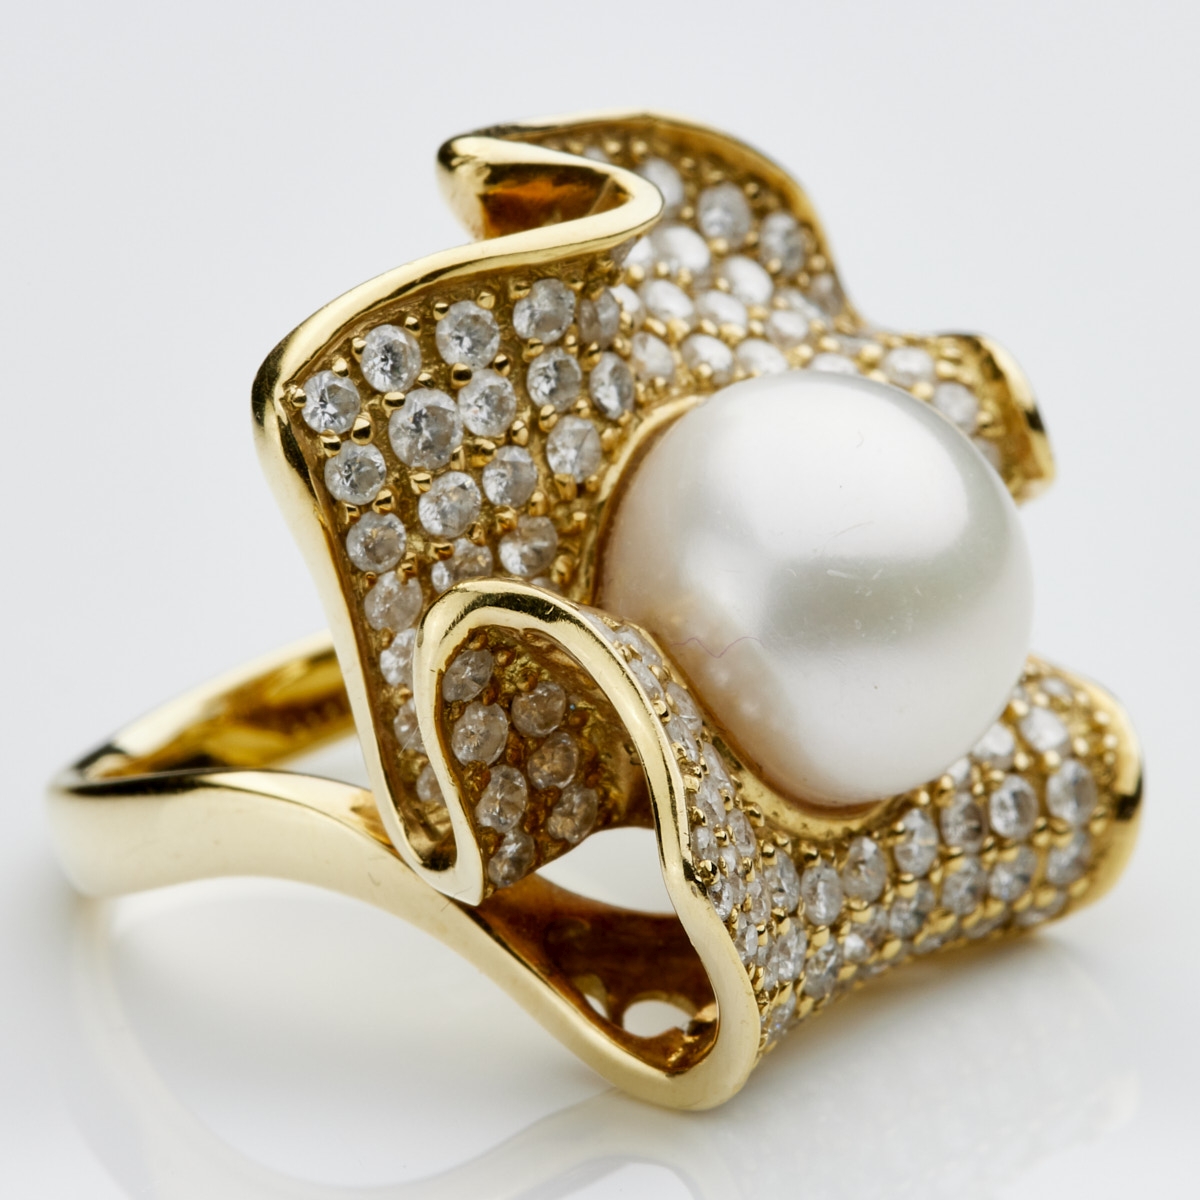 Blütenring mit Perle und Brillanten in Pavéfassung - - Image 2 of 2